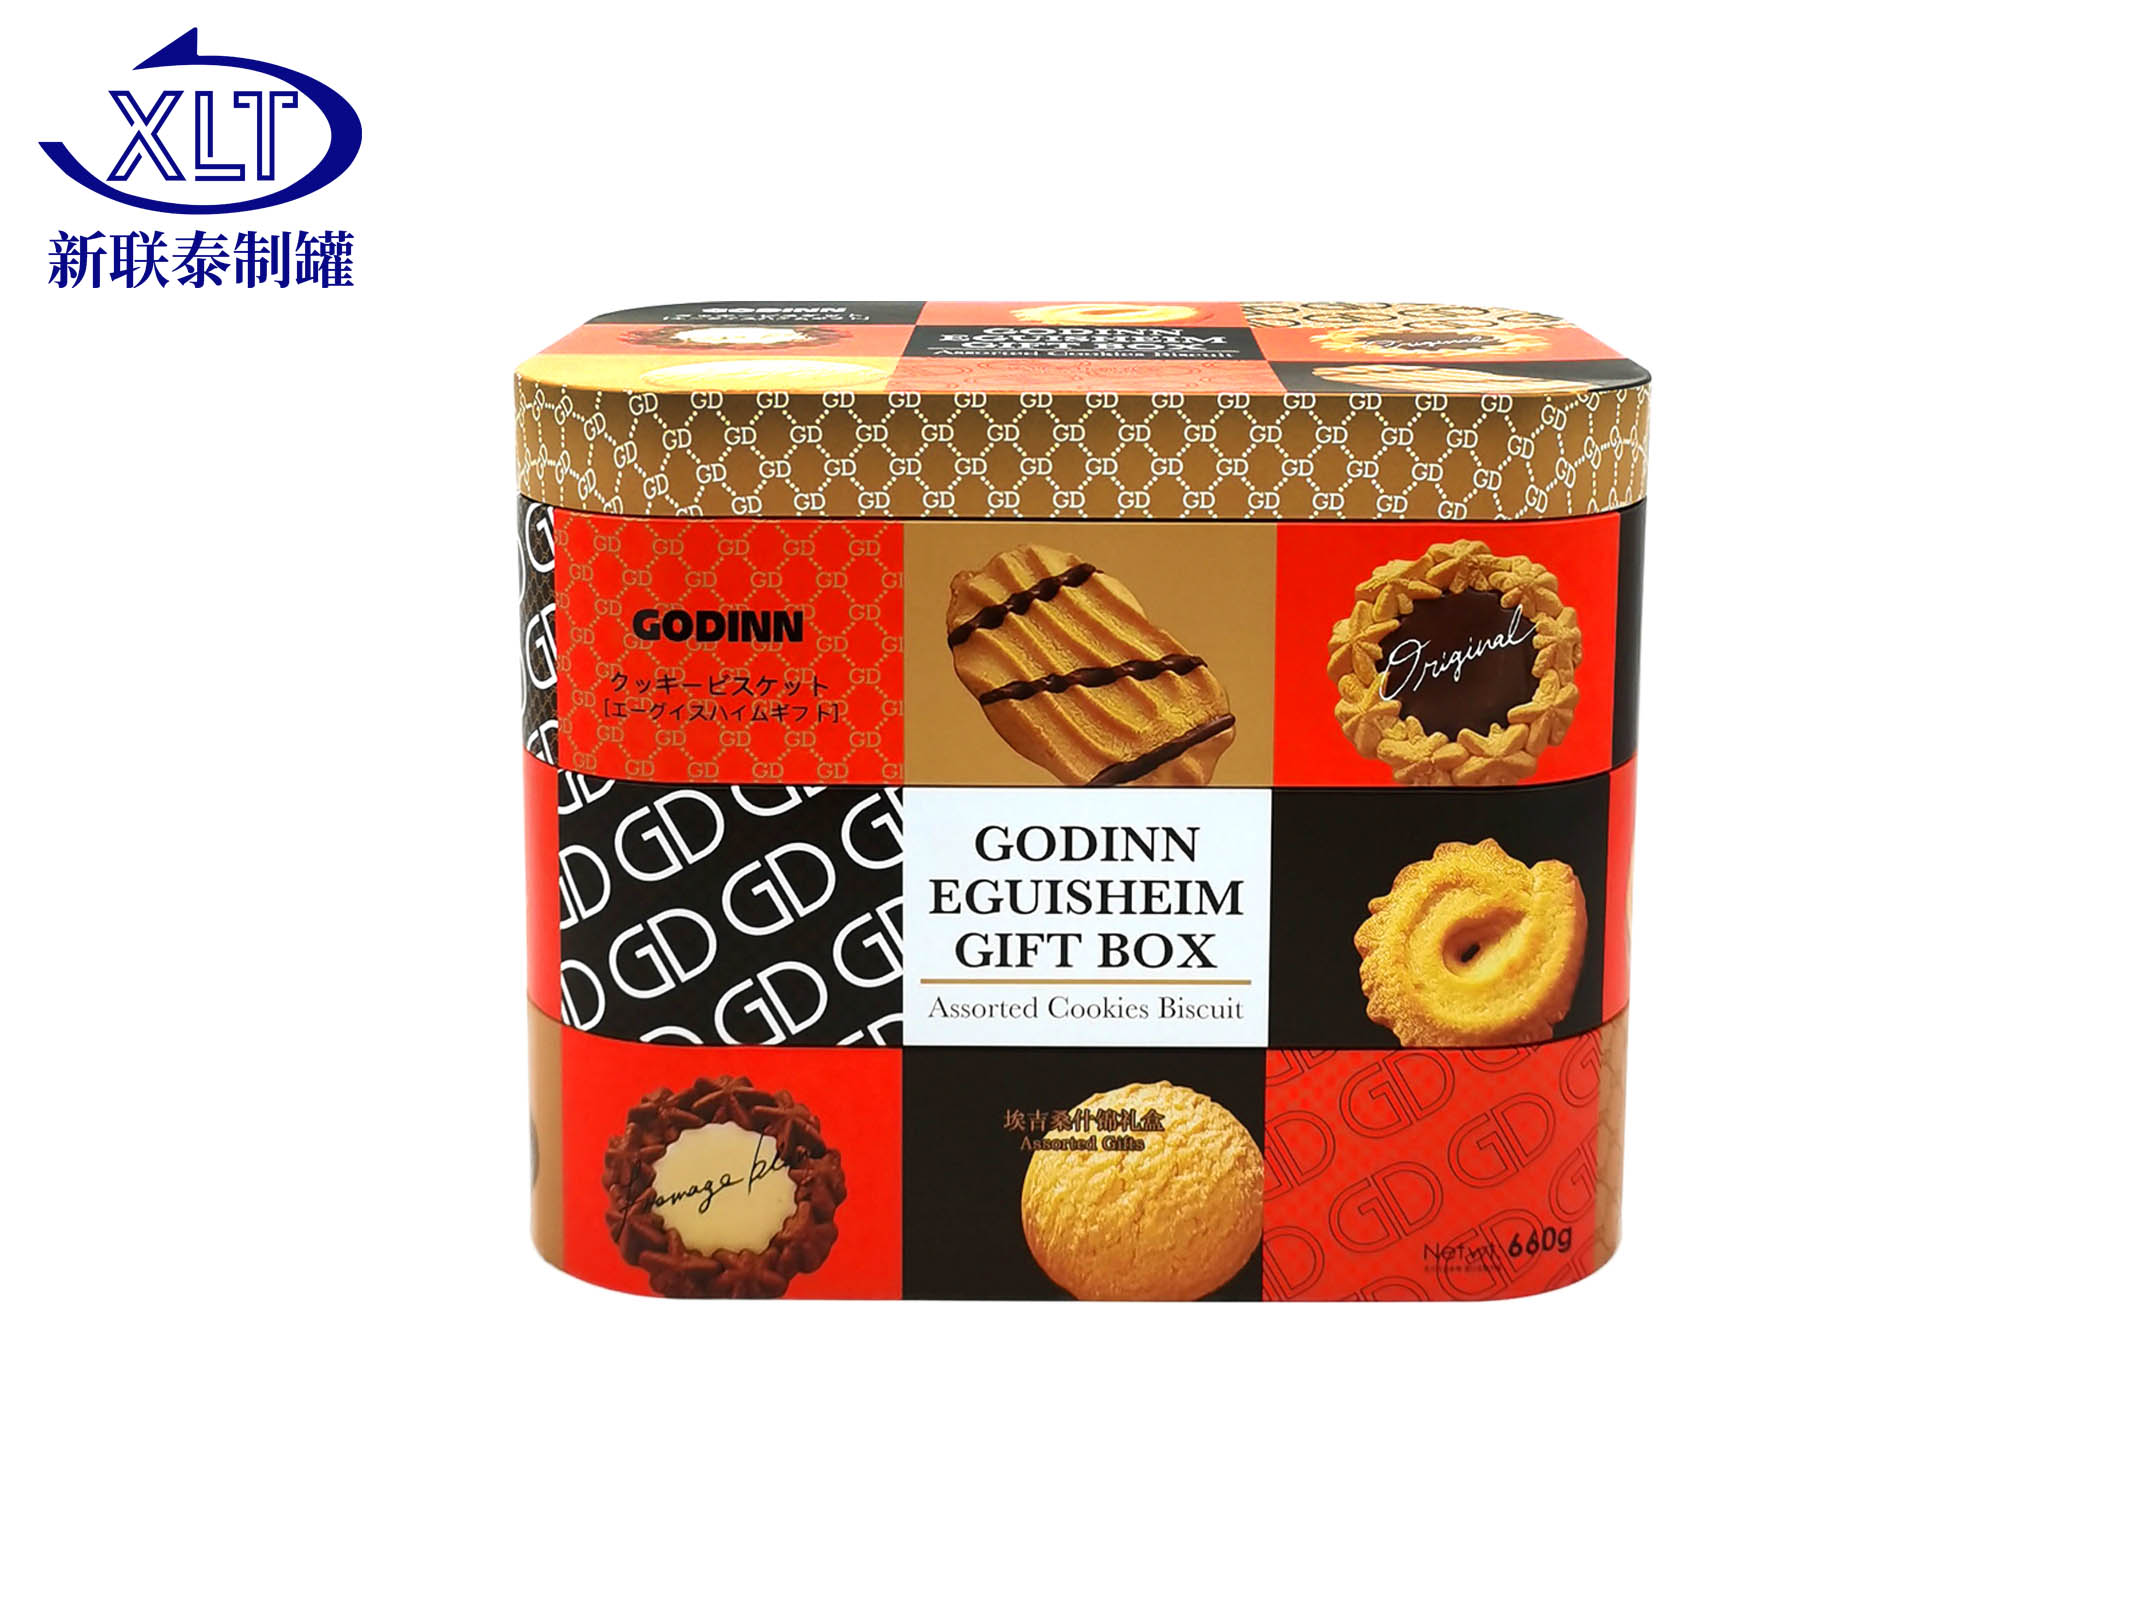 食品包装-曲奇礼盒饼干-铁盒包装生产厂家